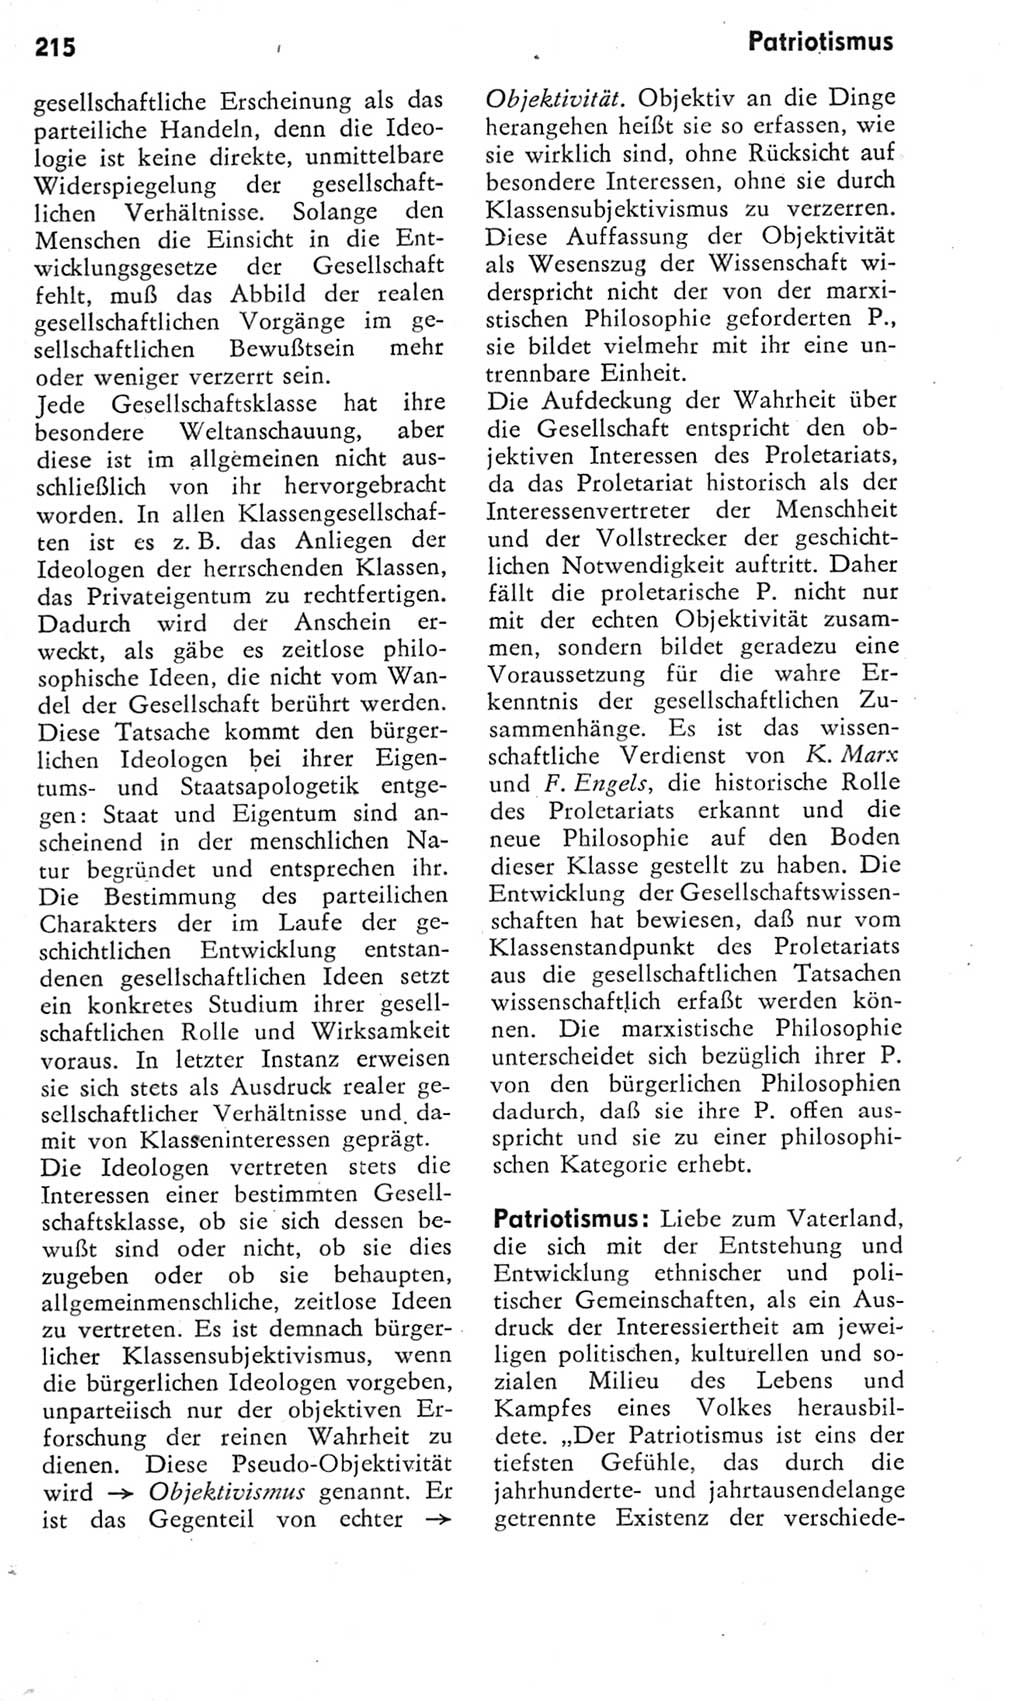 Kleines Wörterbuch der marxistisch-leninistischen Philosophie [Deutsche Demokratische Republik (DDR)] 1975, Seite 215 (Kl. Wb. ML Phil. DDR 1975, S. 215)